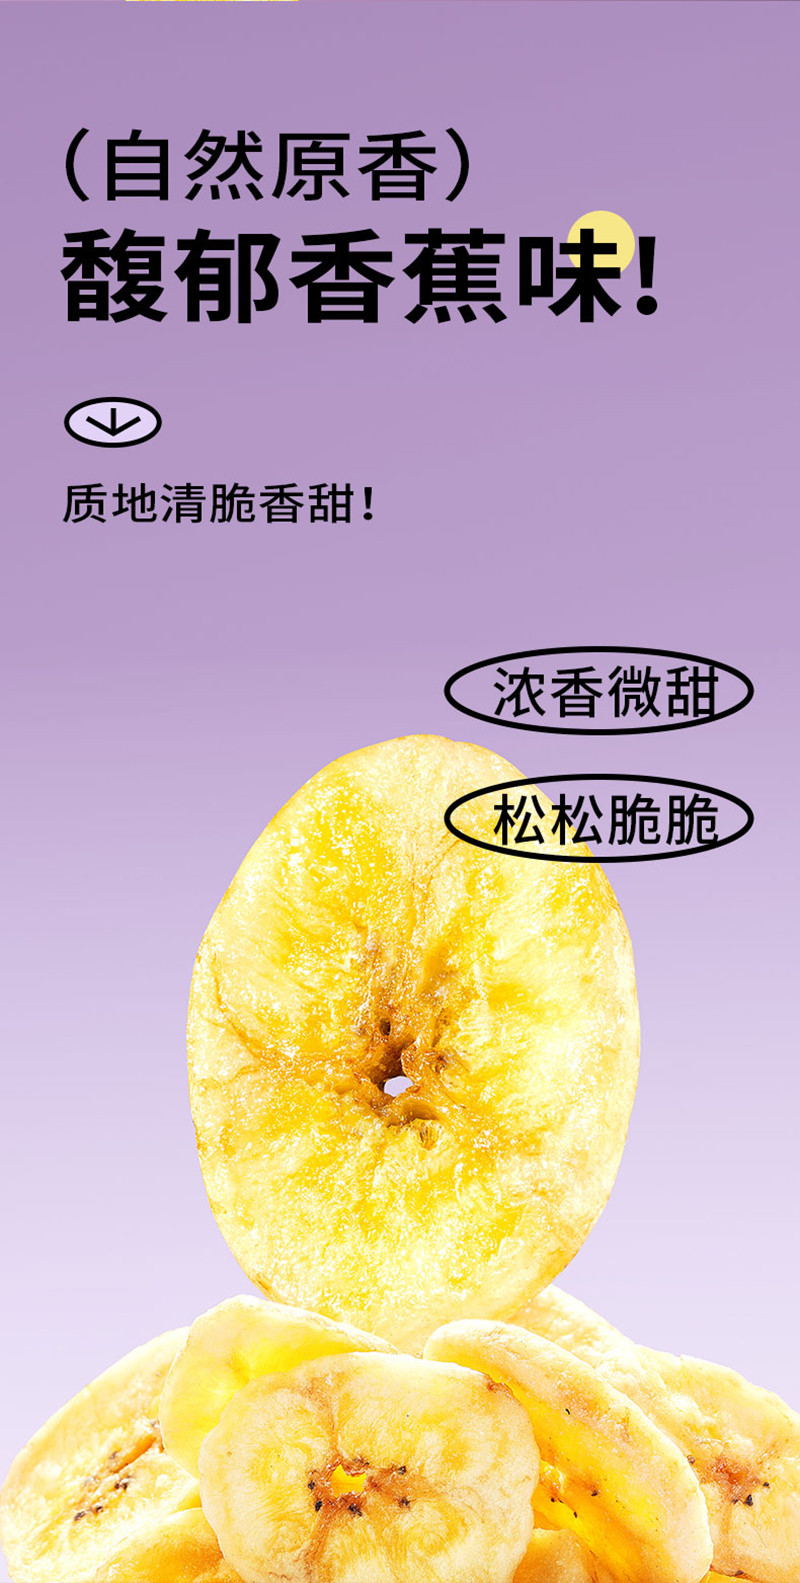 鲜记 香蕉片228g/罐